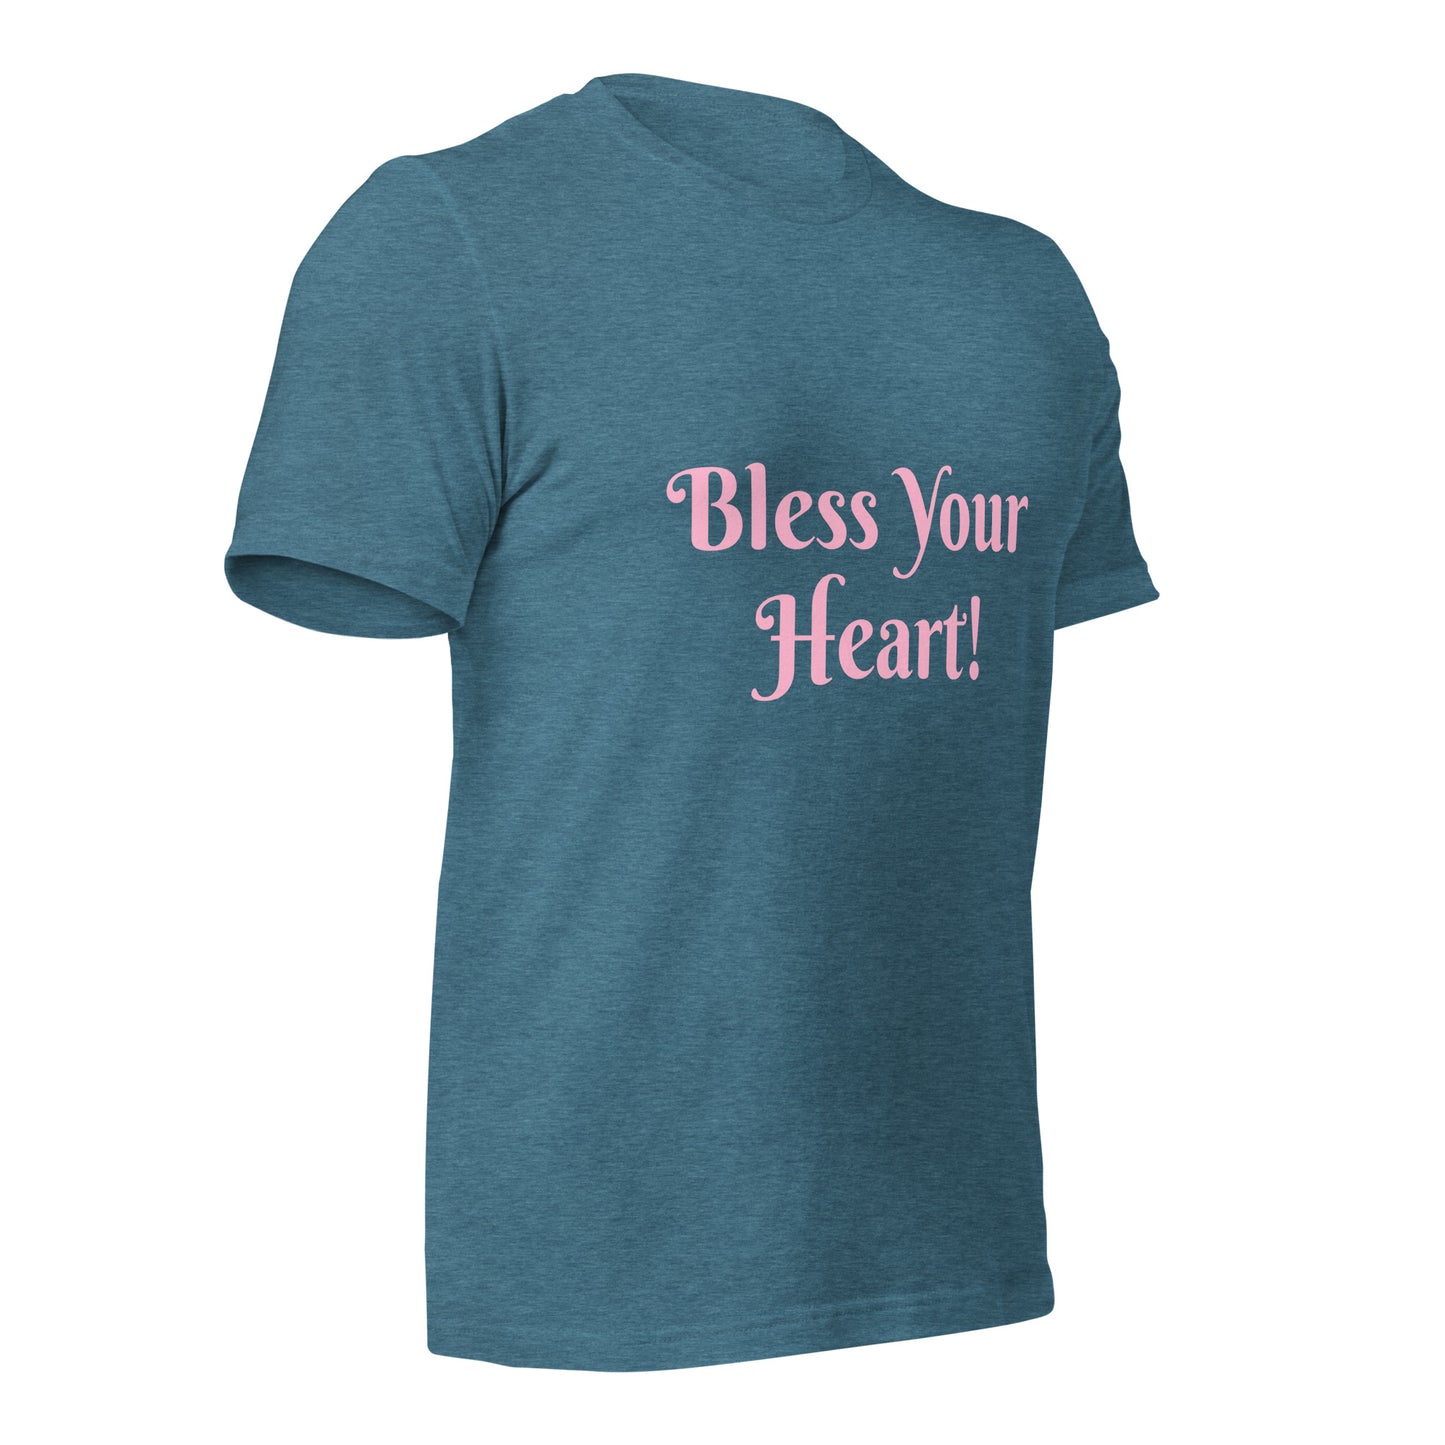 Bless Your Heart! Unisex t-shirt